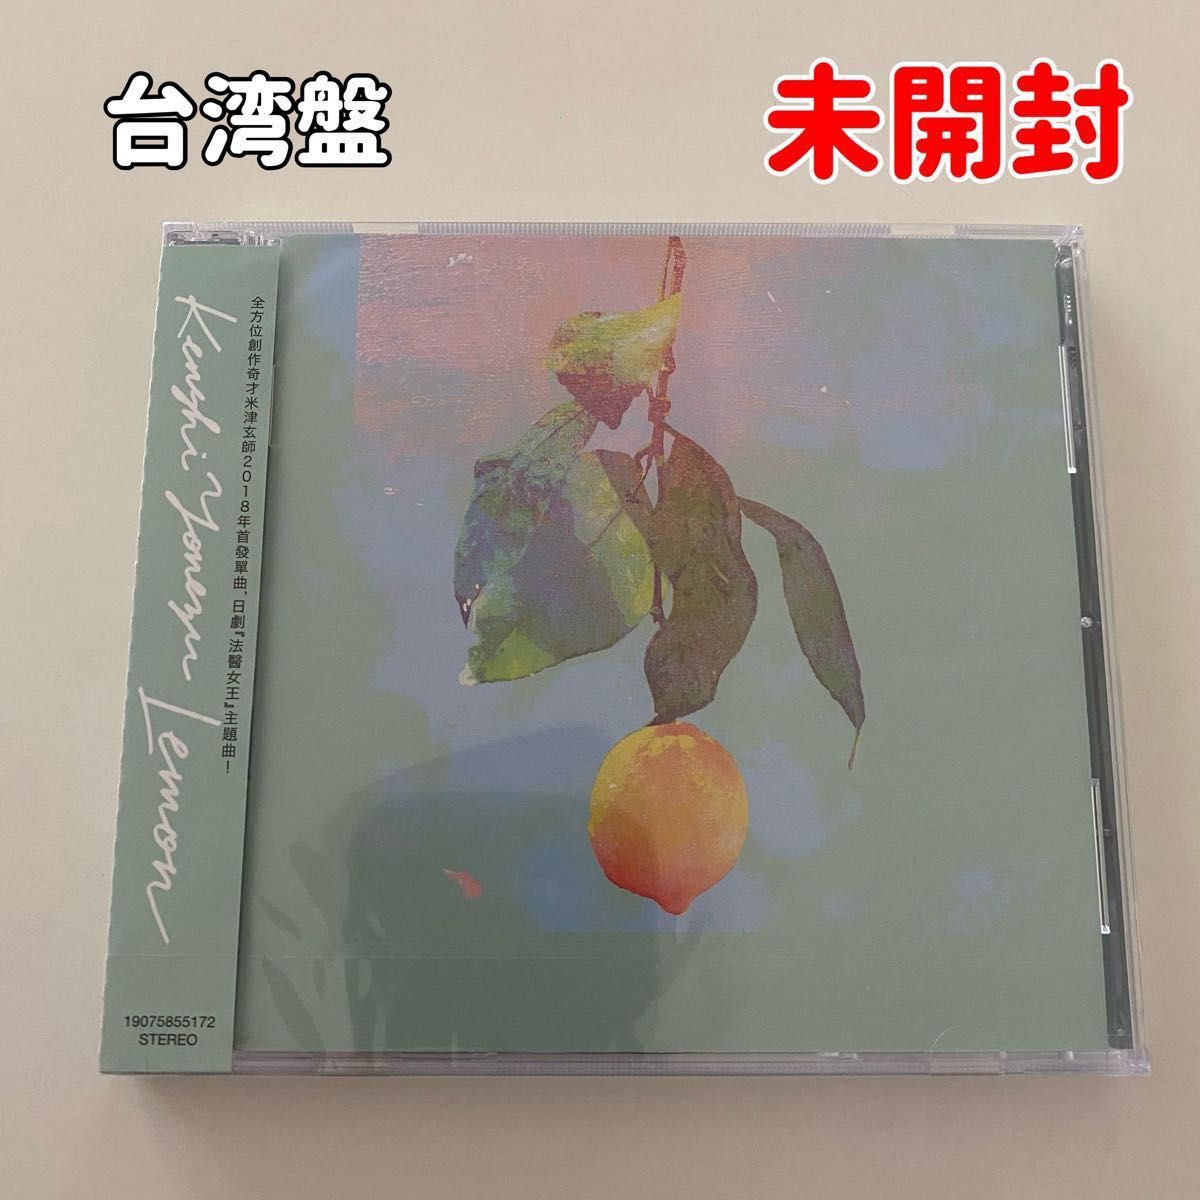 【未開封】米津玄師 Lemon シングルCD 台湾販売用 セル版